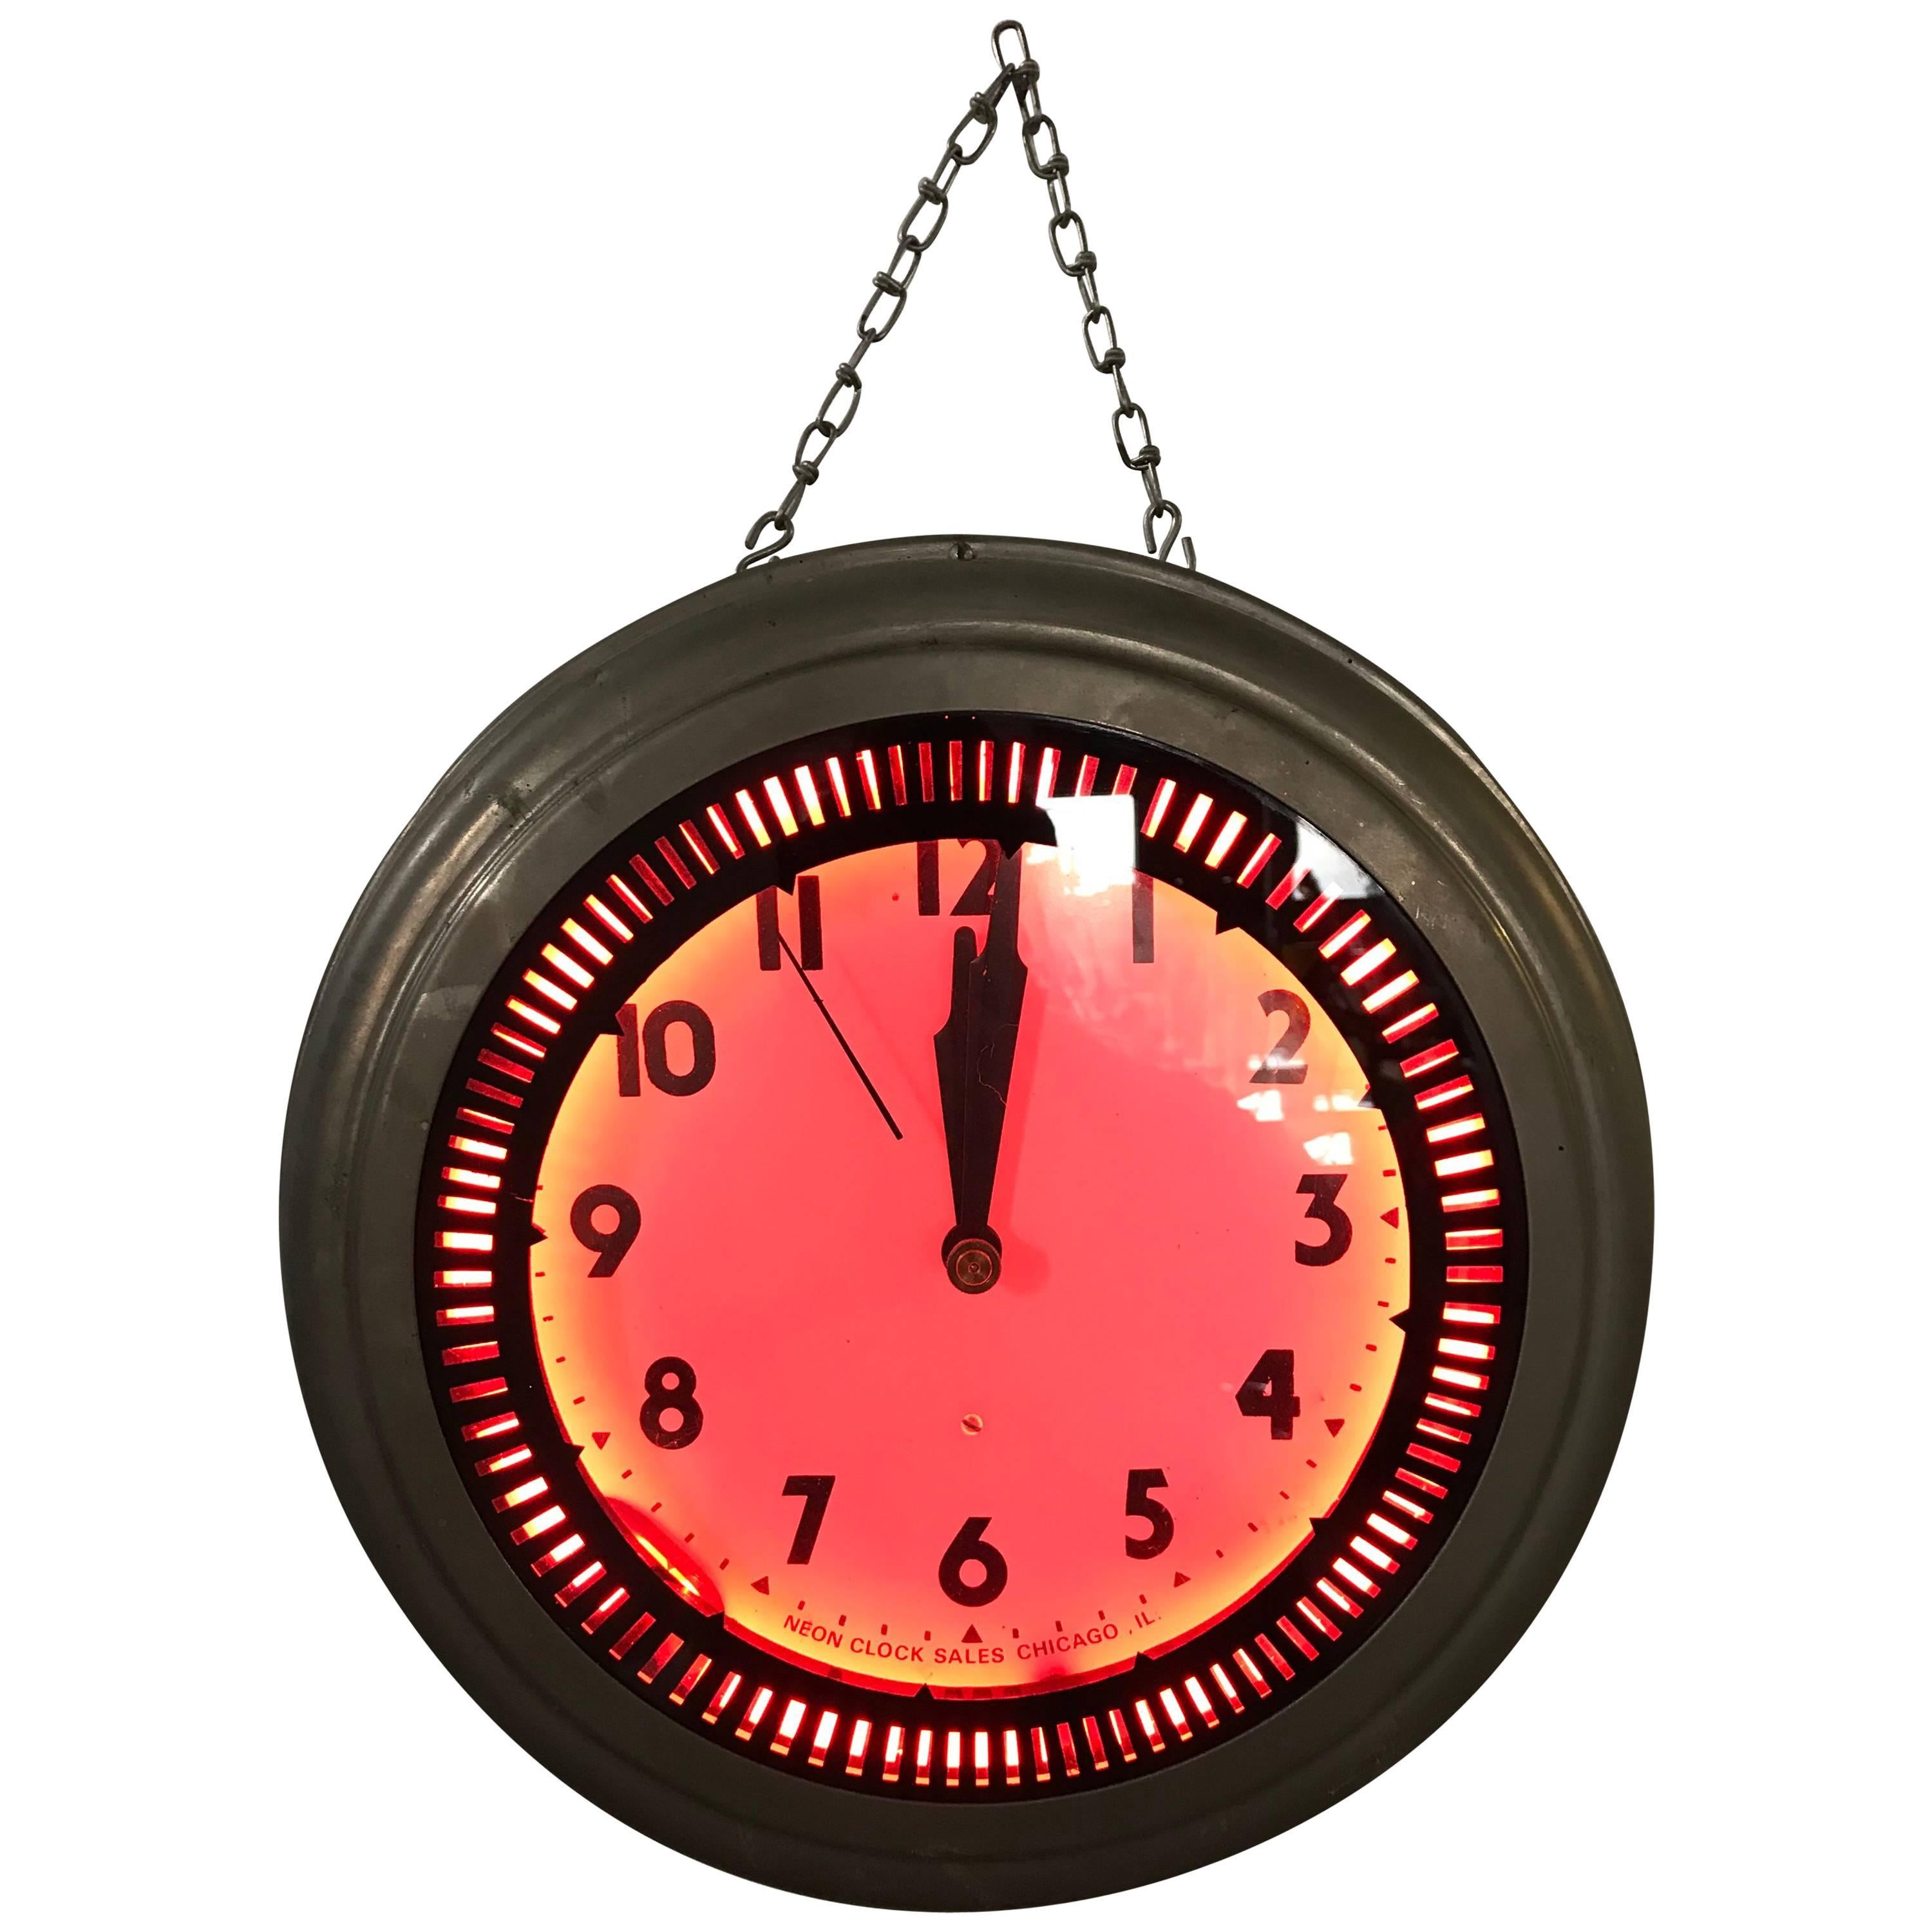 1930s Art Deco "Spinner" Neon Clock, Pink Glow, Neon Clock Sales Chicago